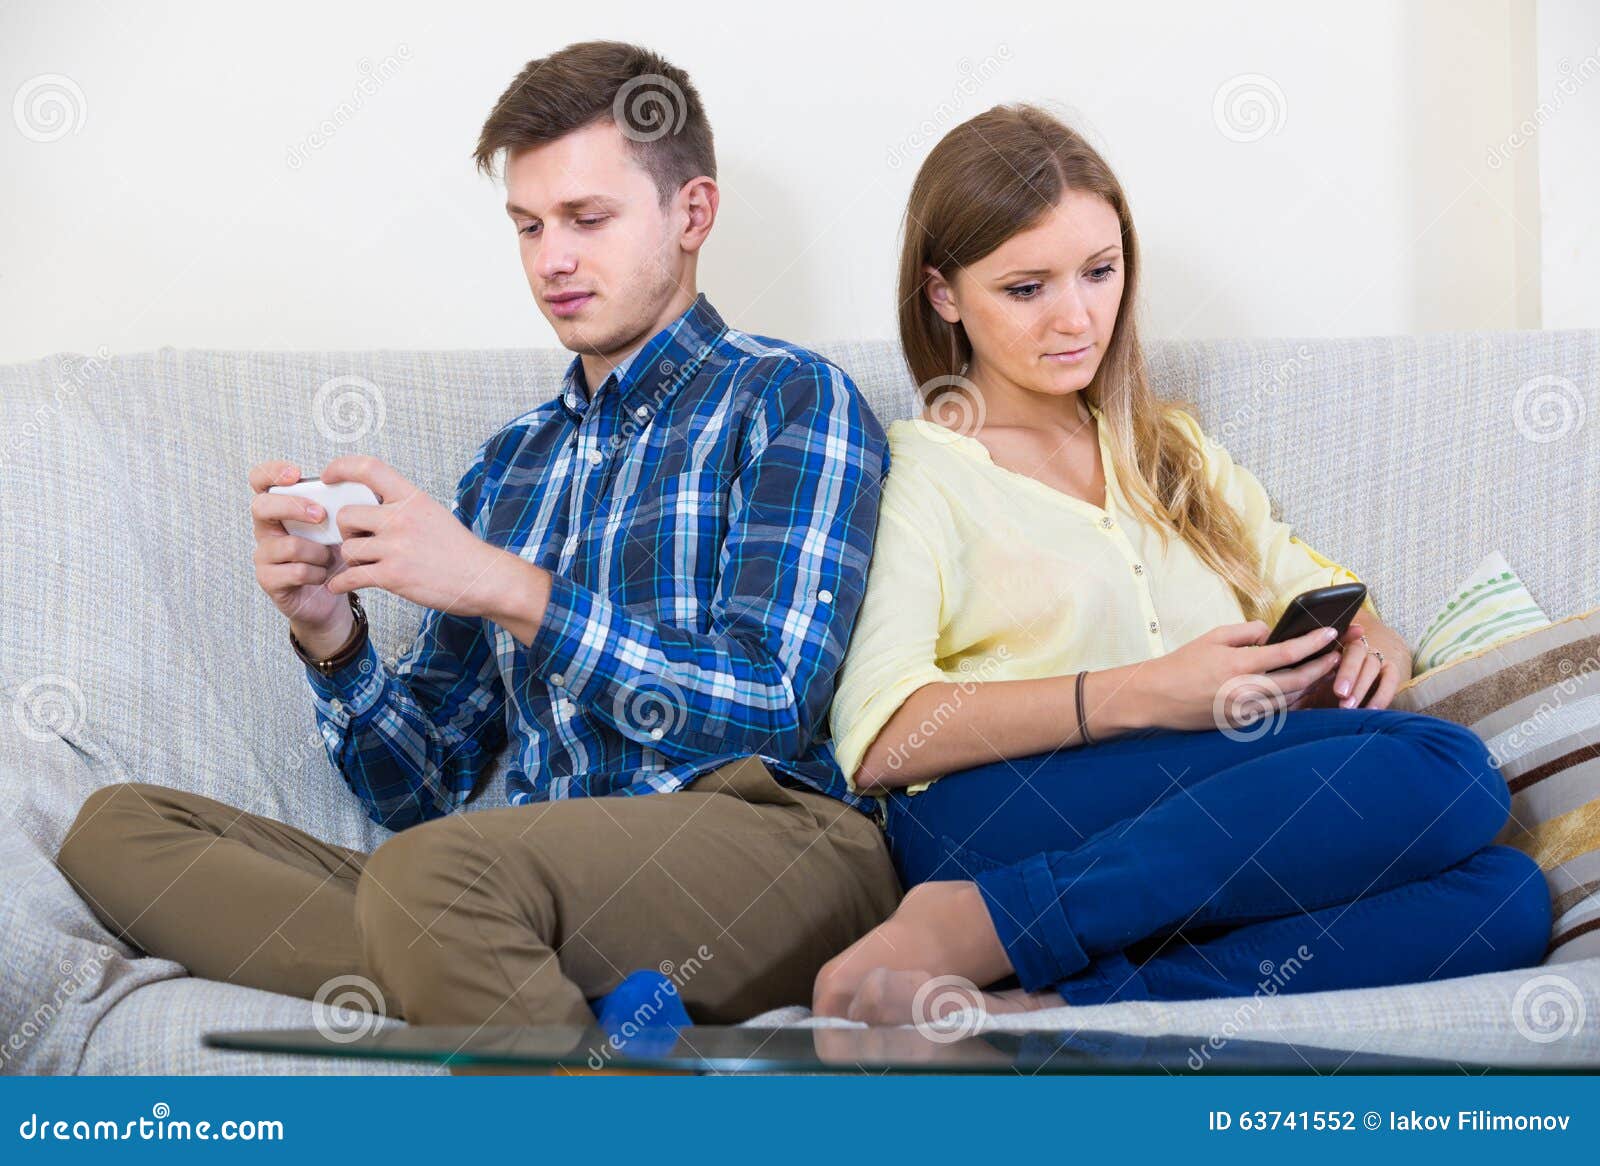 Жена сидит в телефоне. Супруги сидят с телефоном. Муж и жена сидят в телефонах. Фото жена сидит на муже. Узу сидит с женами.